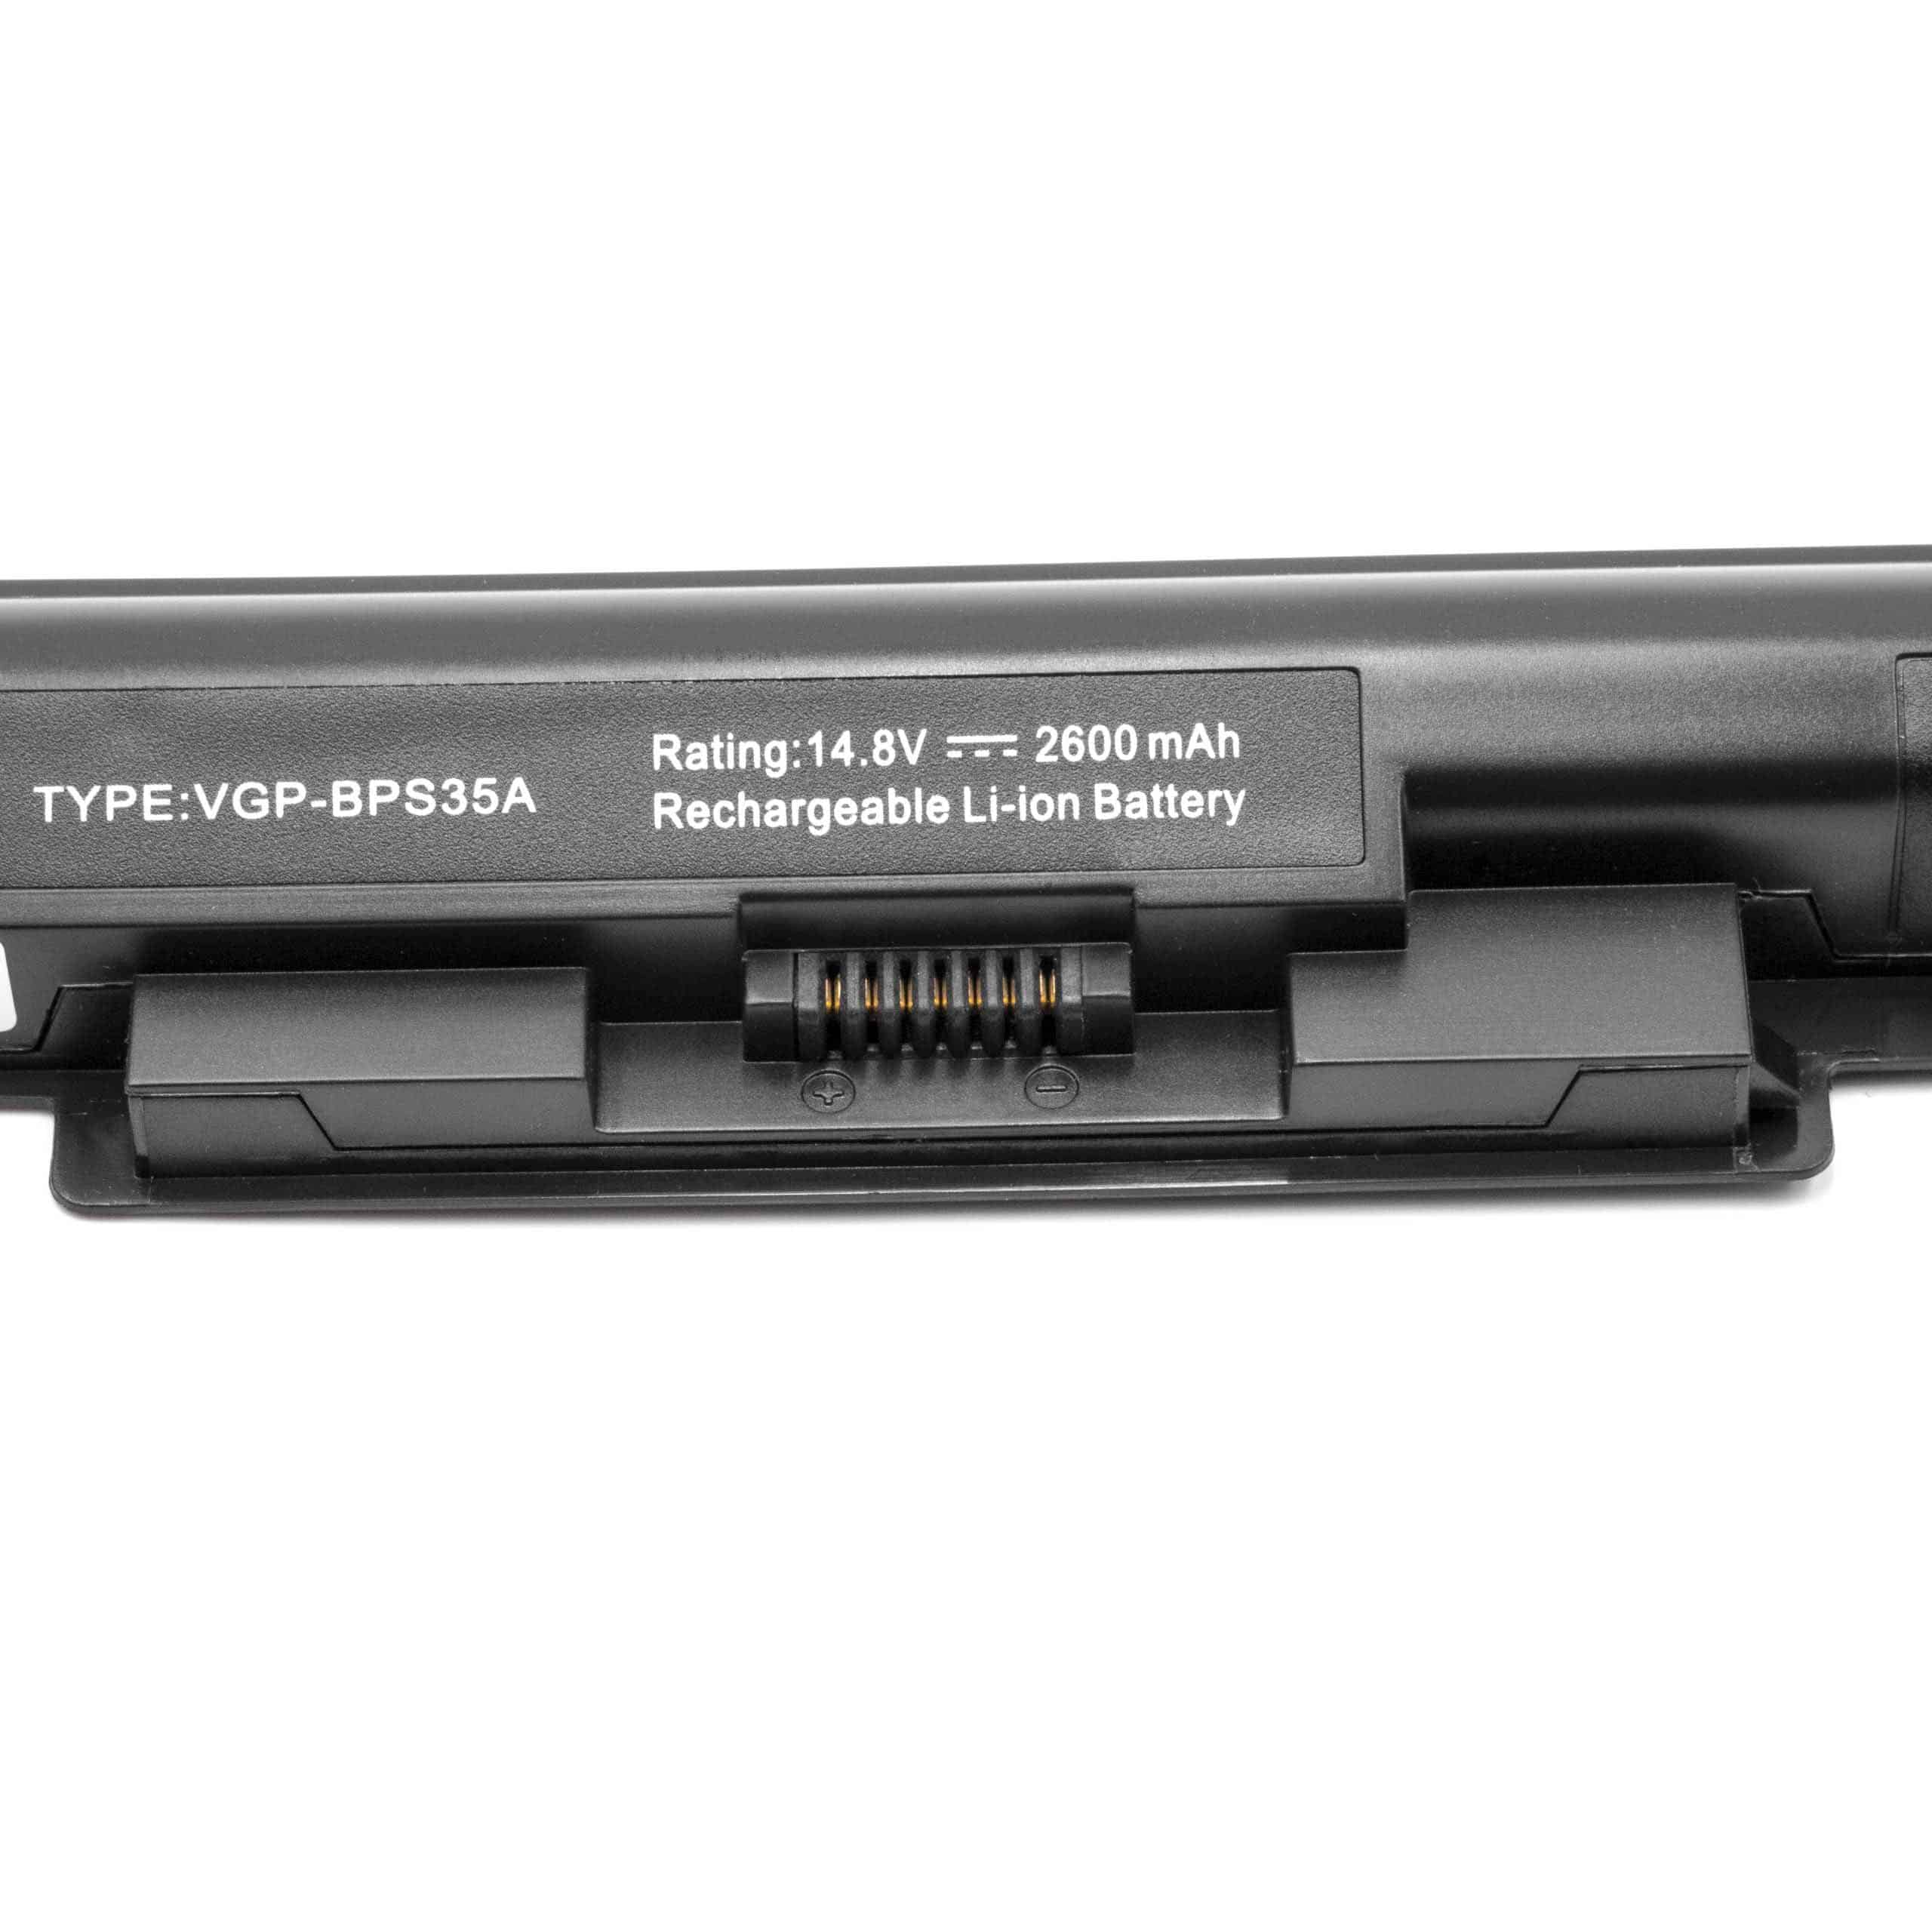 Batterie remplace Sony VGP-BPS35A, VGP-BPS35 pour ordinateur portable - 2600mAh 14,8V Li-ion, noir